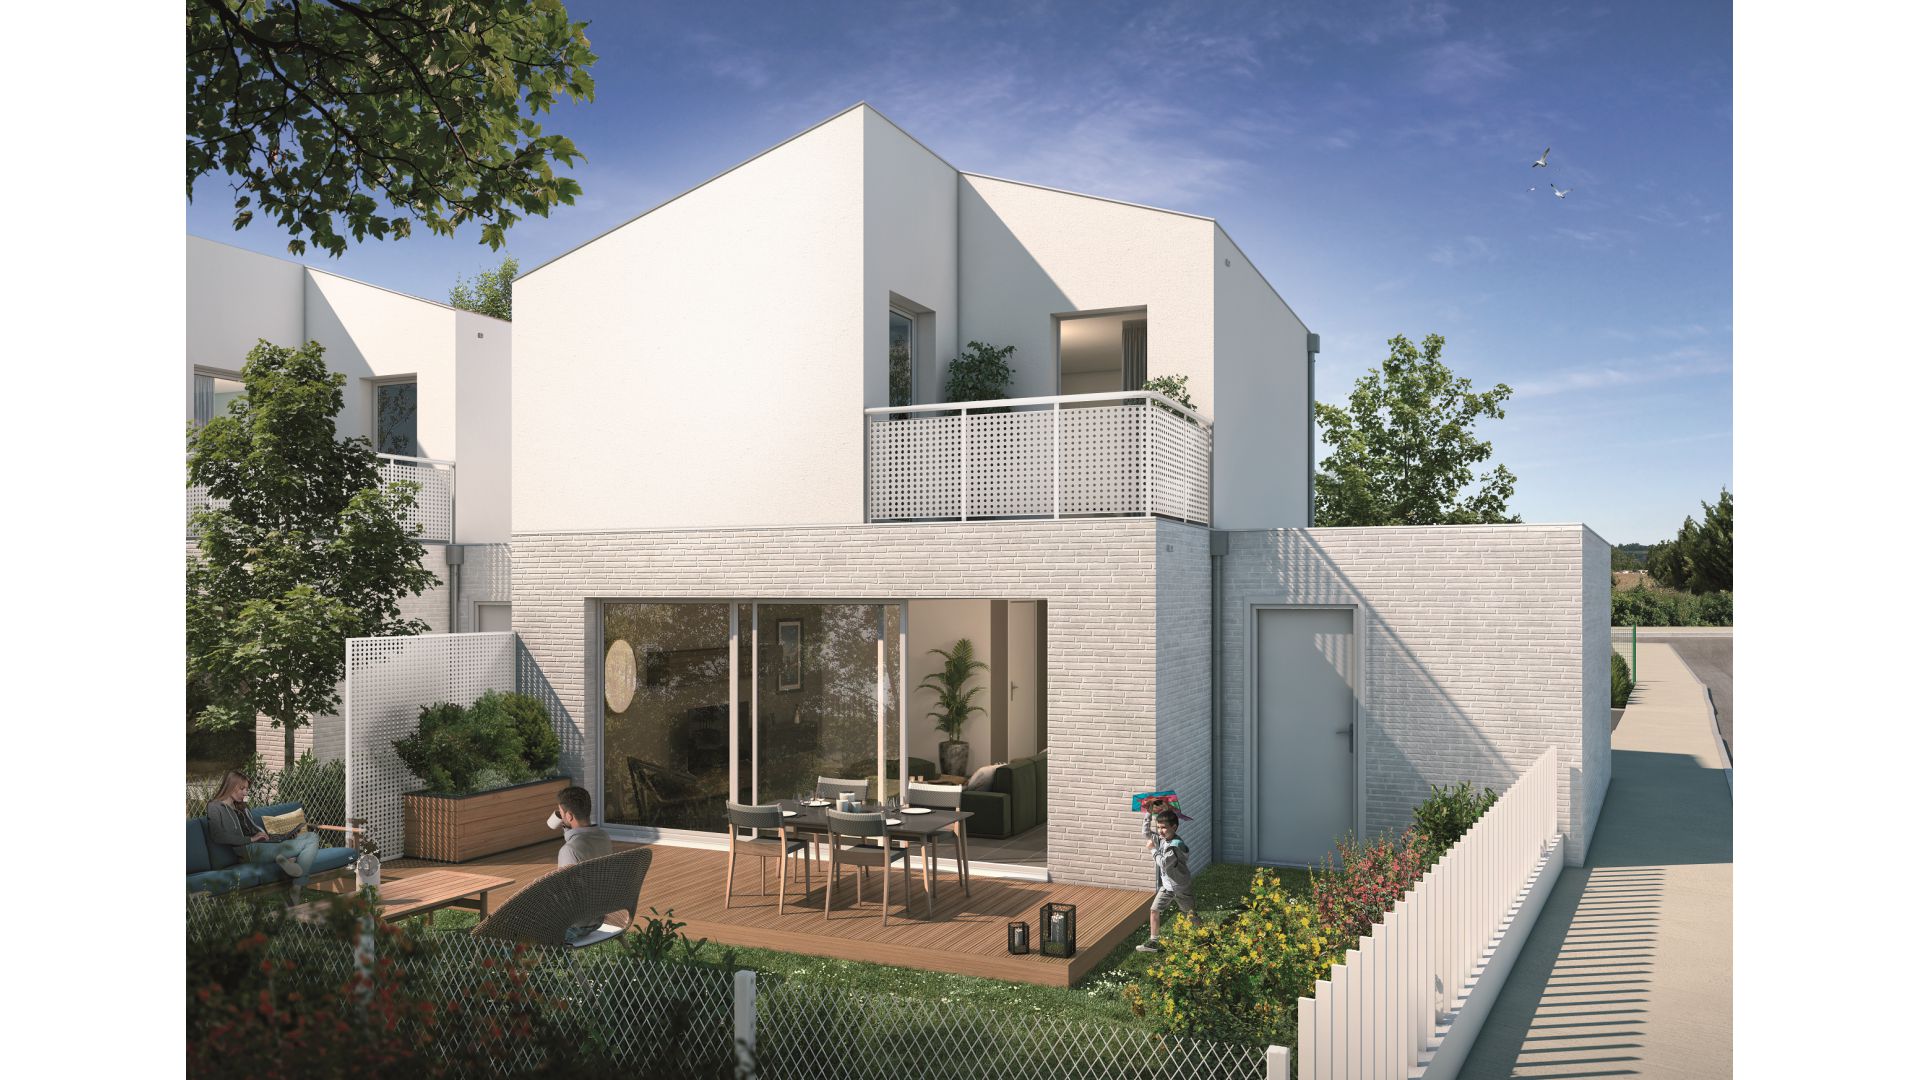 GreenCity immobilier - Saint-Jory - 31790 - Résidence Domaine D'Ophélia - appartements neufs du T2 au T4 et villas T3 et T5   - villa T5